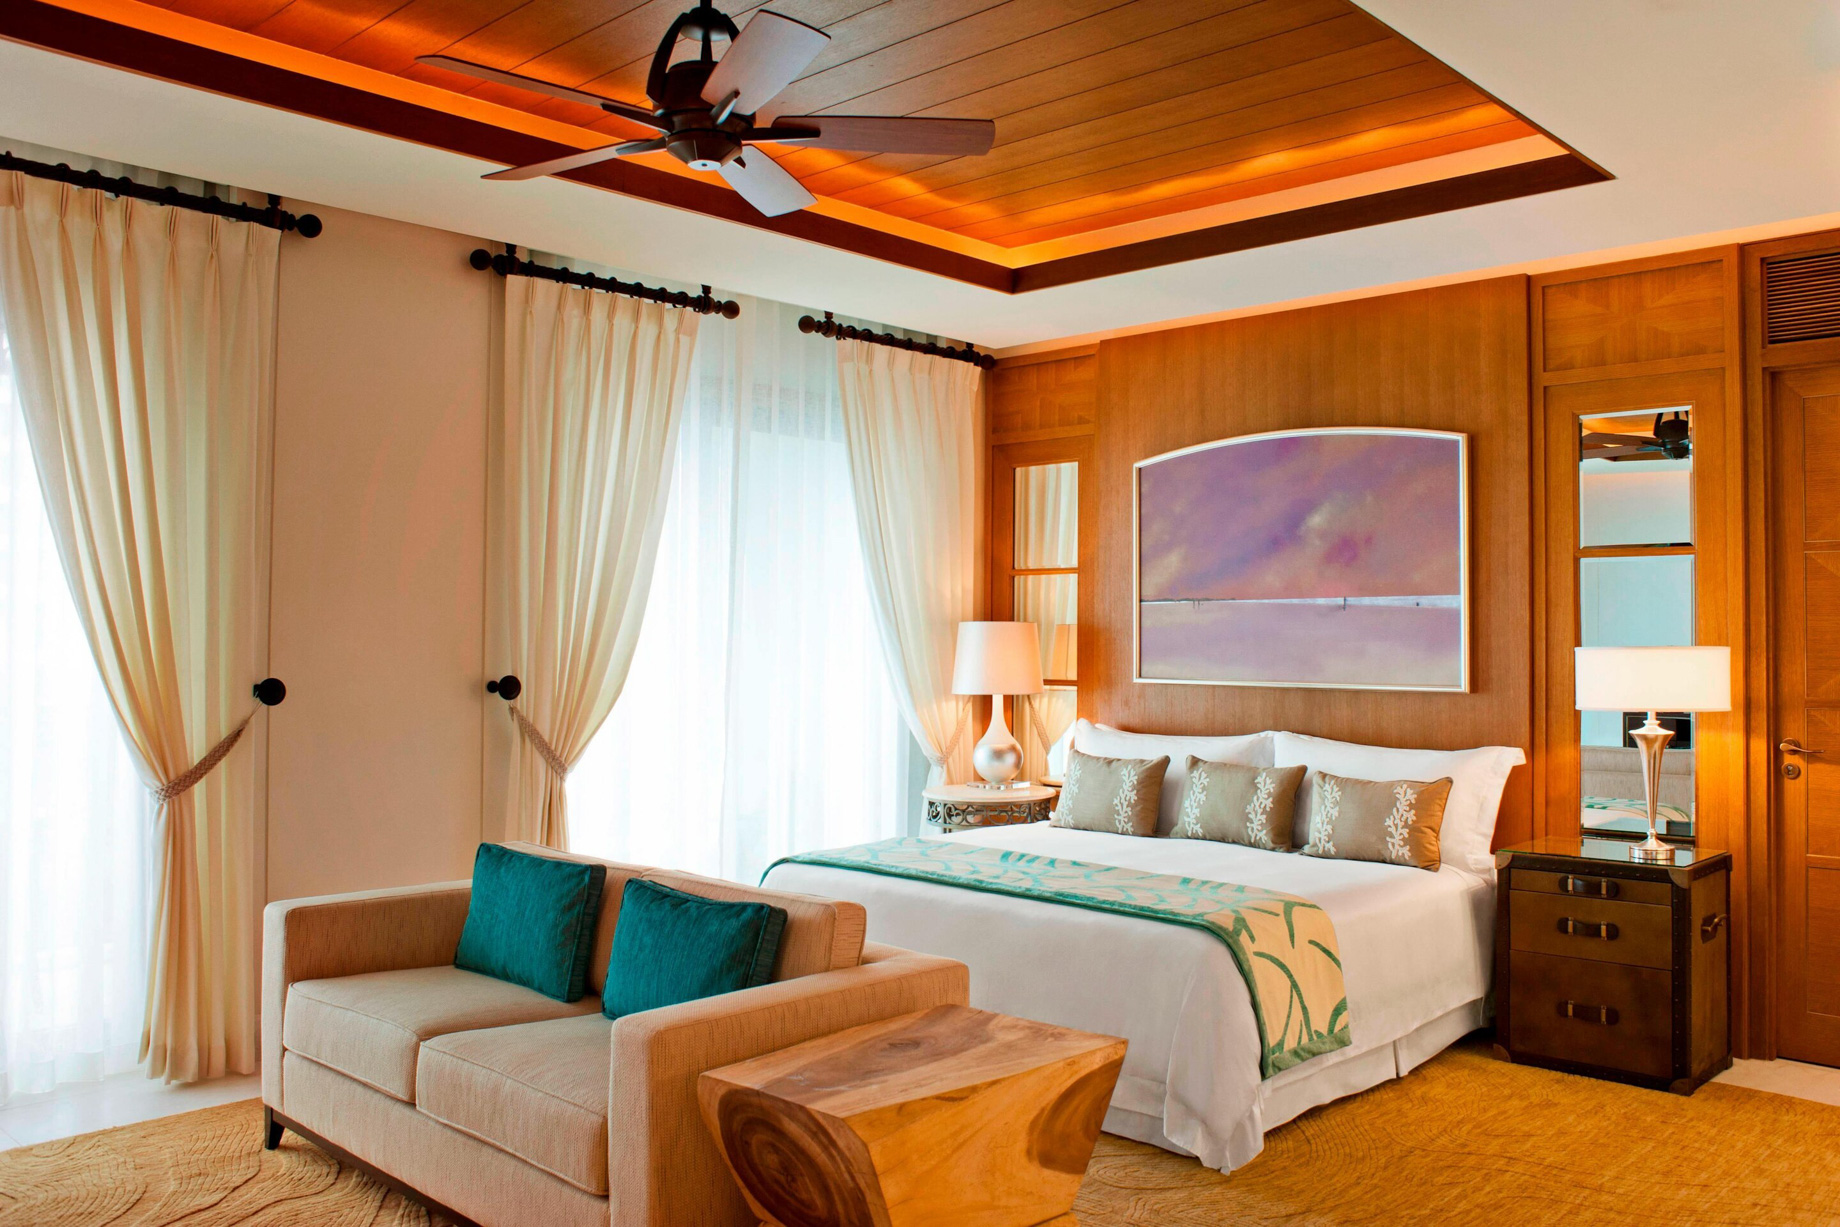 The St. Regis Saadiyat Island Resort - Abu Dhabi, UAE - St. Regis Suite Living Area